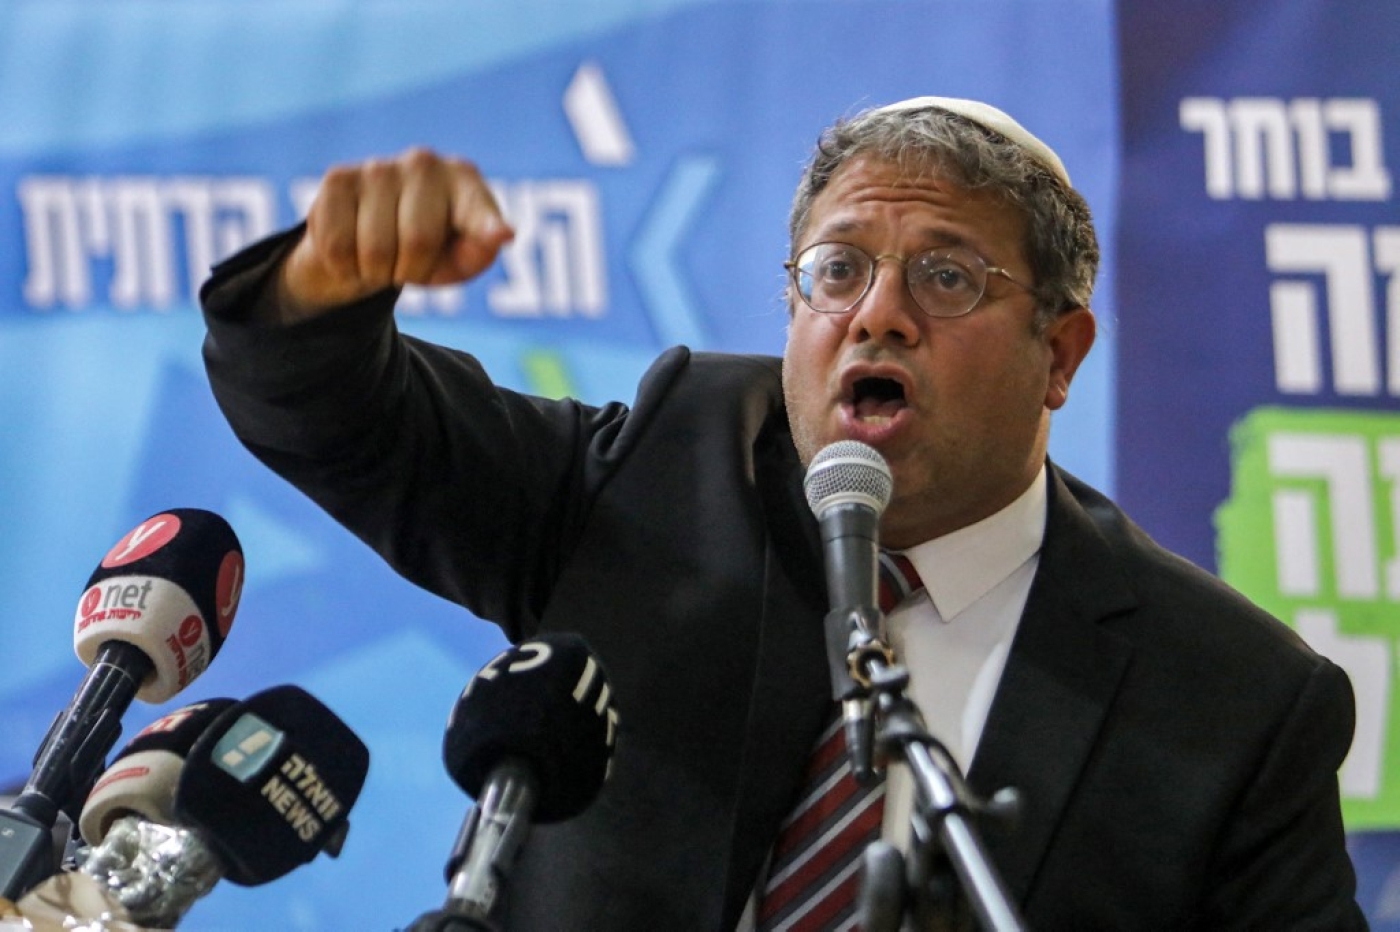 Le député israélien d’extrême droite et dirigeant du parti Force juive Itamar Ben-Gvir s’exprime lors d’un meeting avec ses partisans, le 26 octobre (AFP)